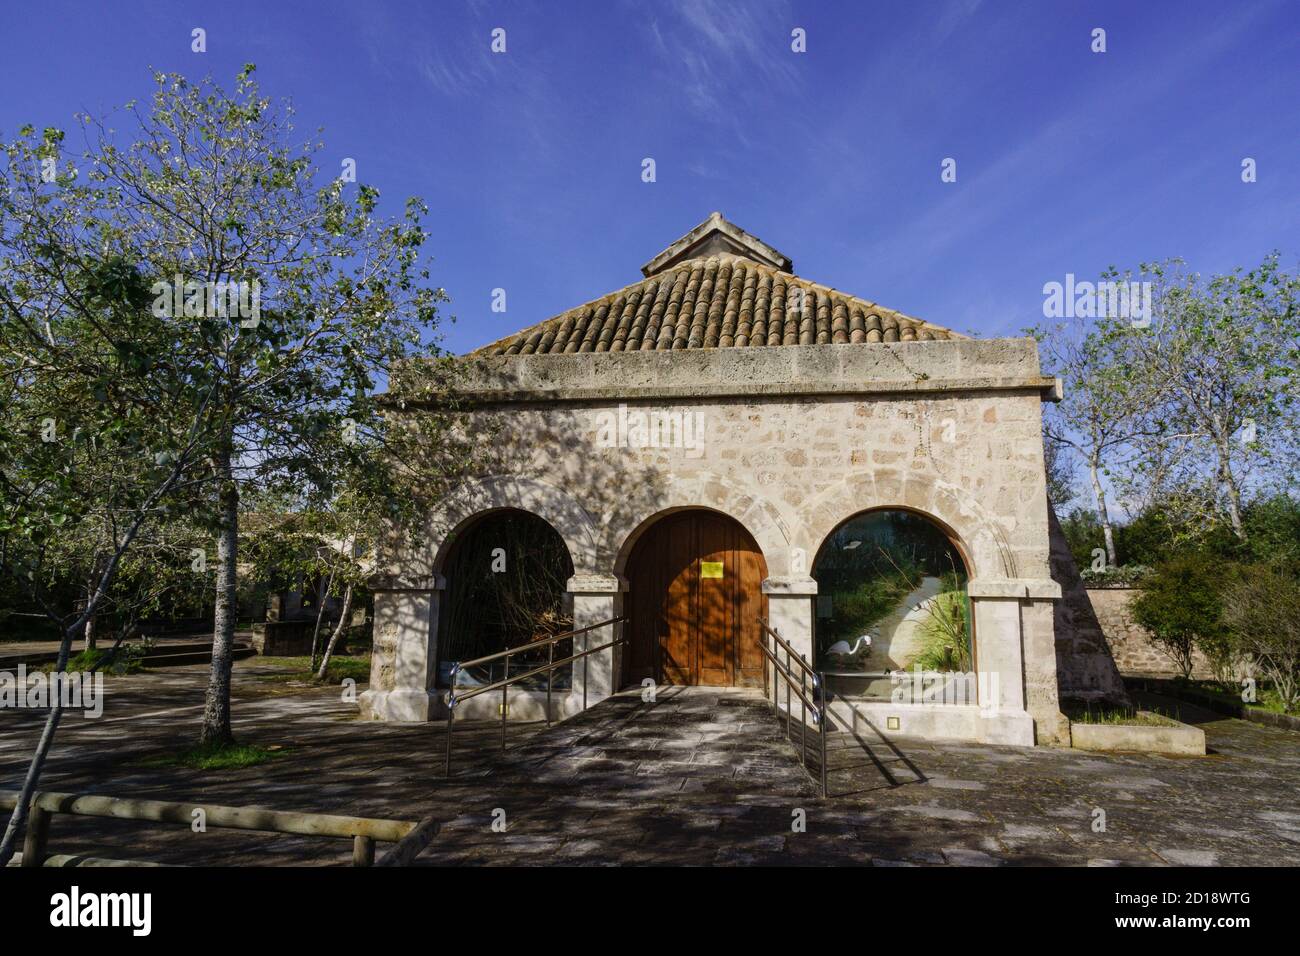 centro de interpretacion Can Bateman, parque natural Albufera de Mallorca, Mallorca,Islas Baleares,Spain. Stock Photo